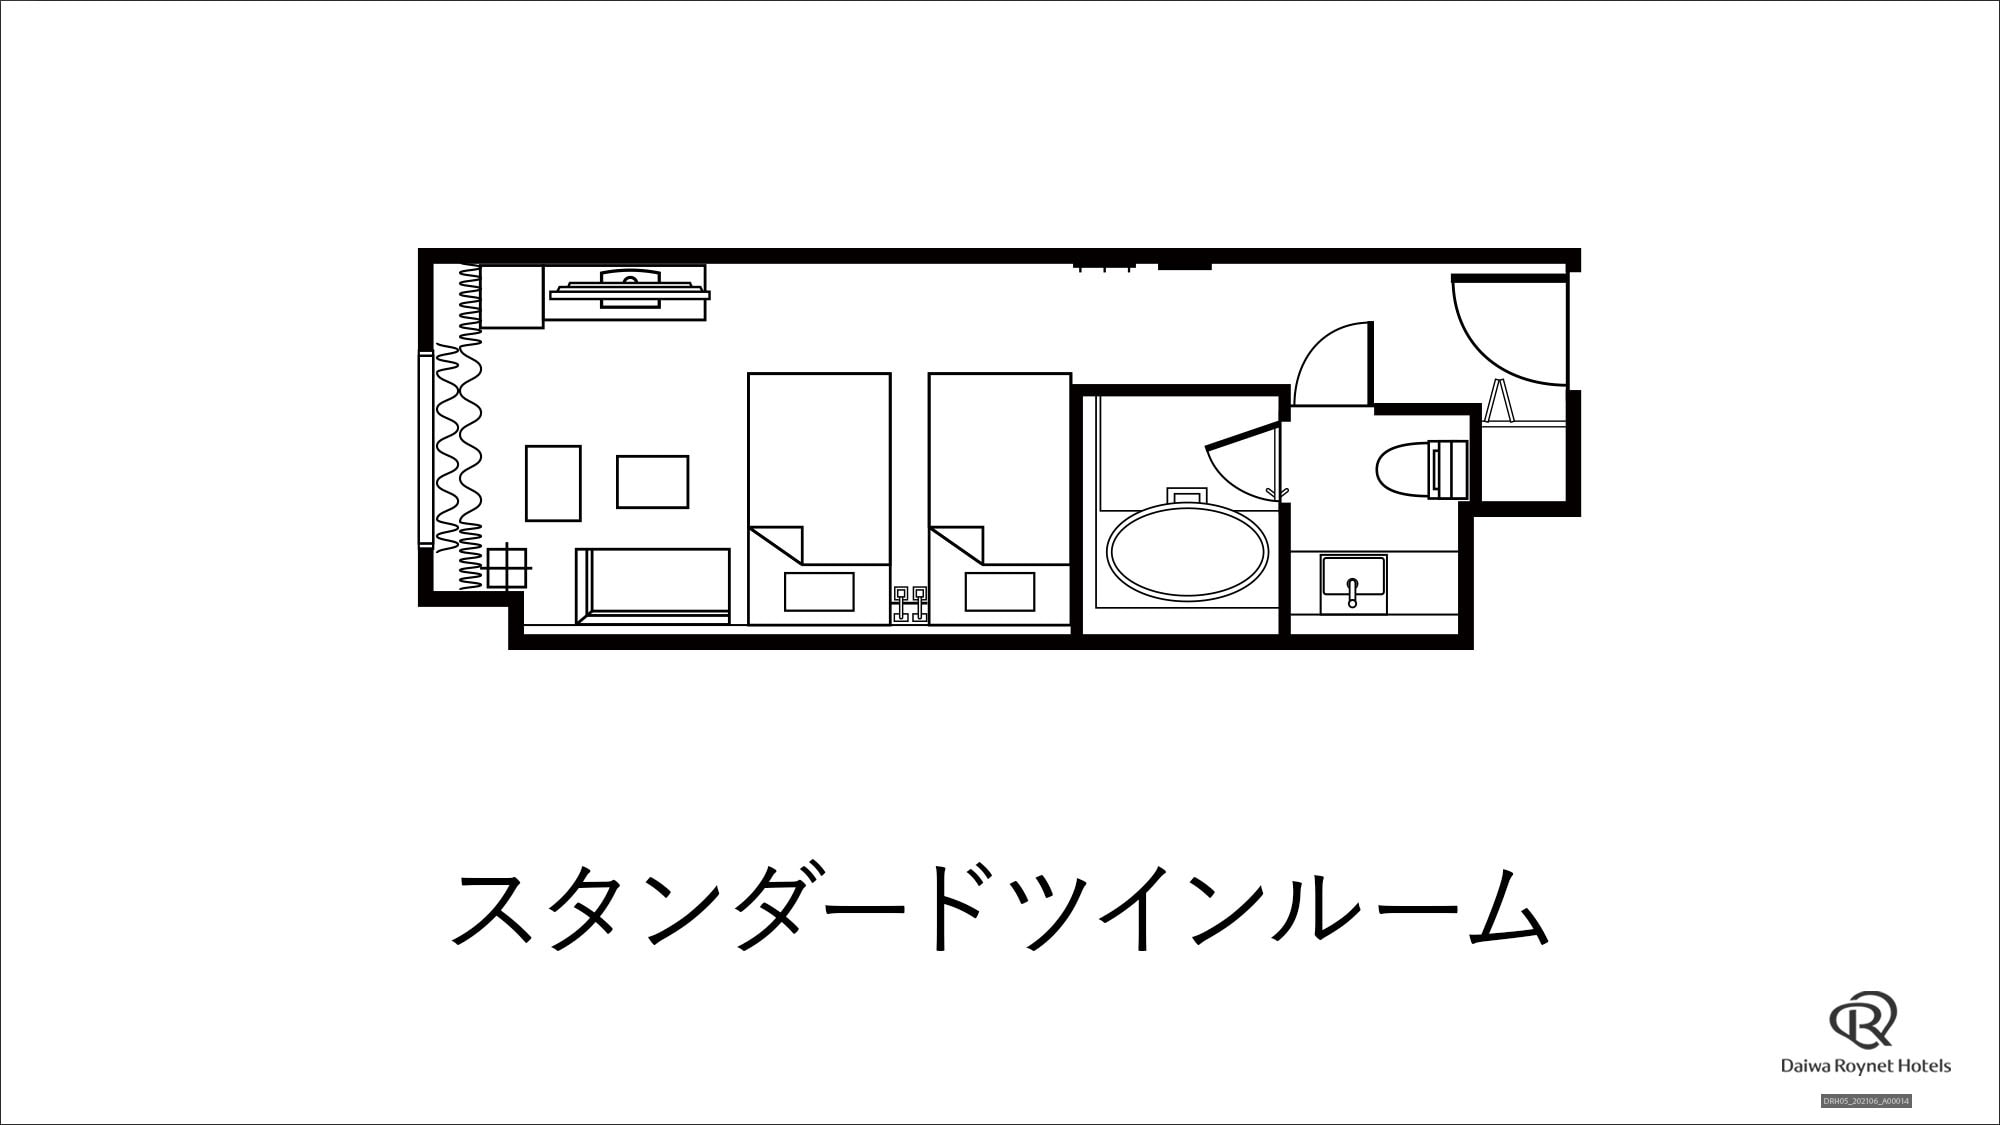 Standard twin floor plan